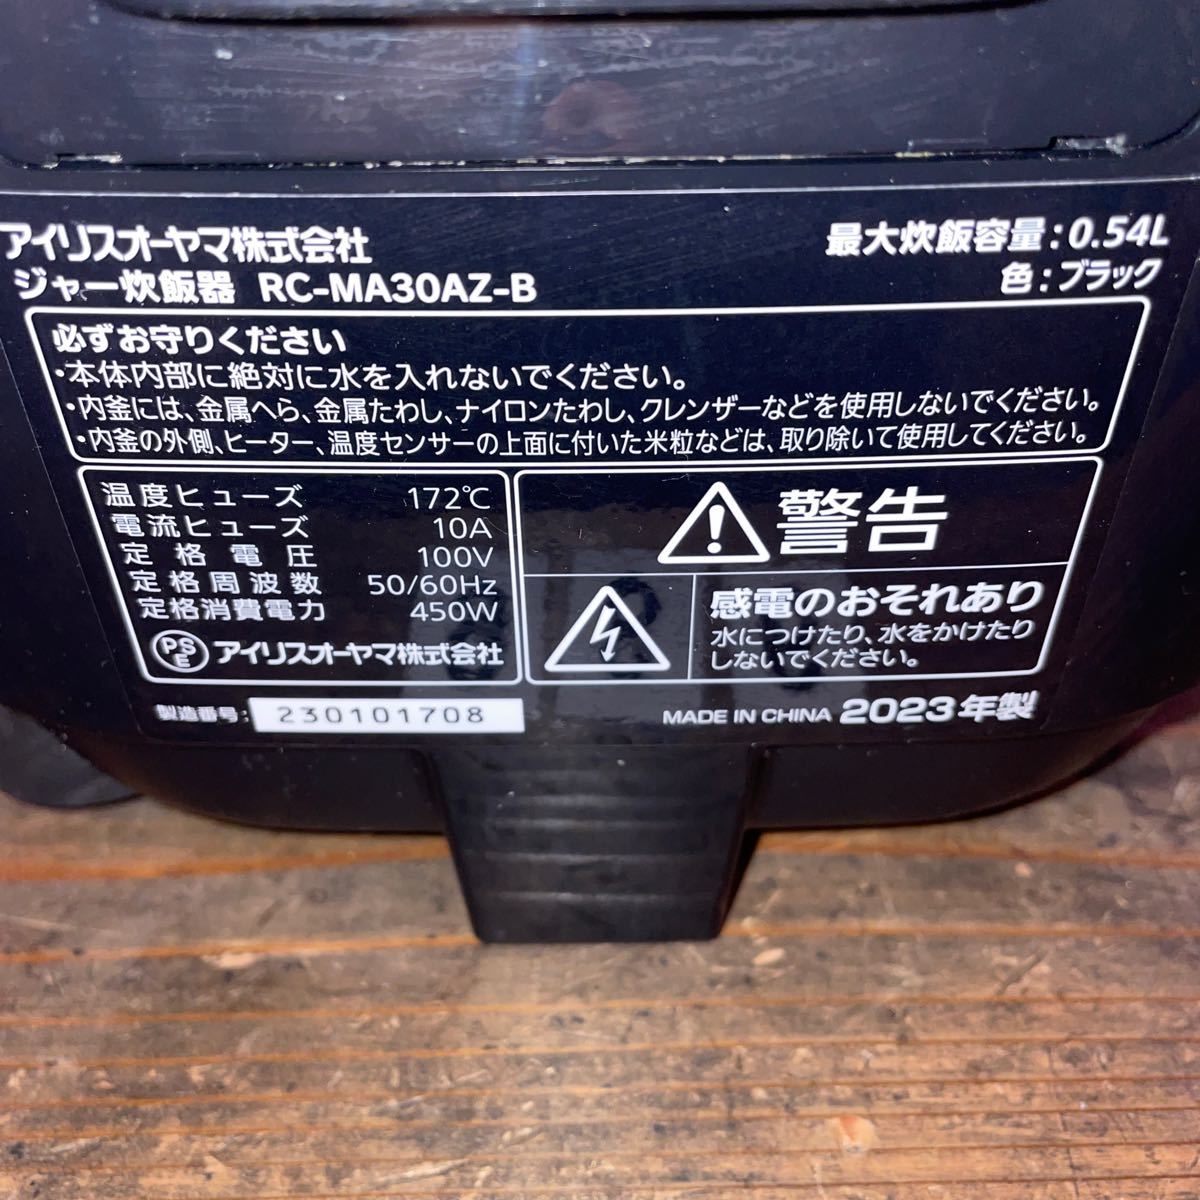  Iris o-yama рисоварка черный RC-MA30AZ-B код есть 2023 год производства NO.986